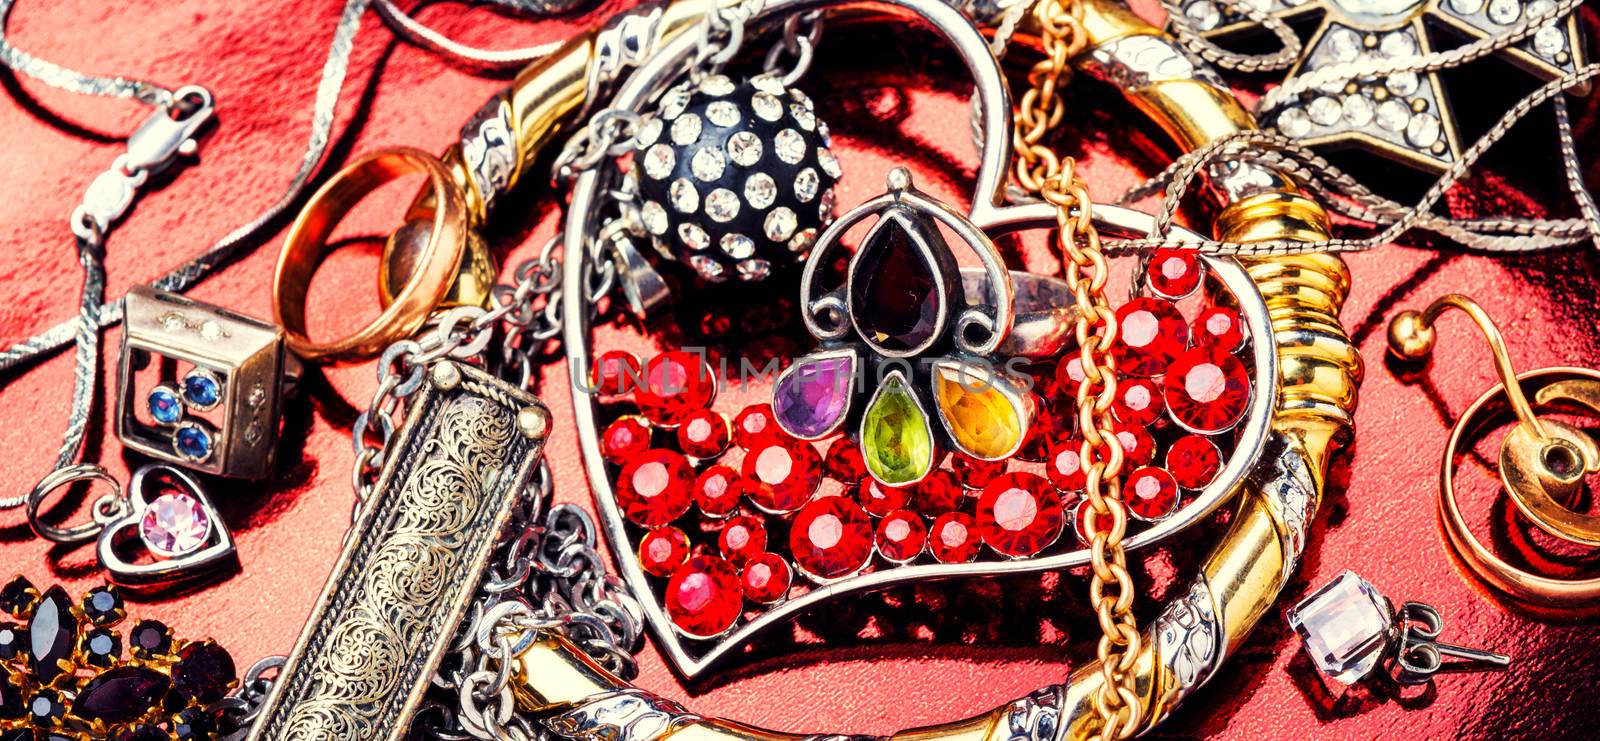 Jewelry and bijouterie. by LMykola